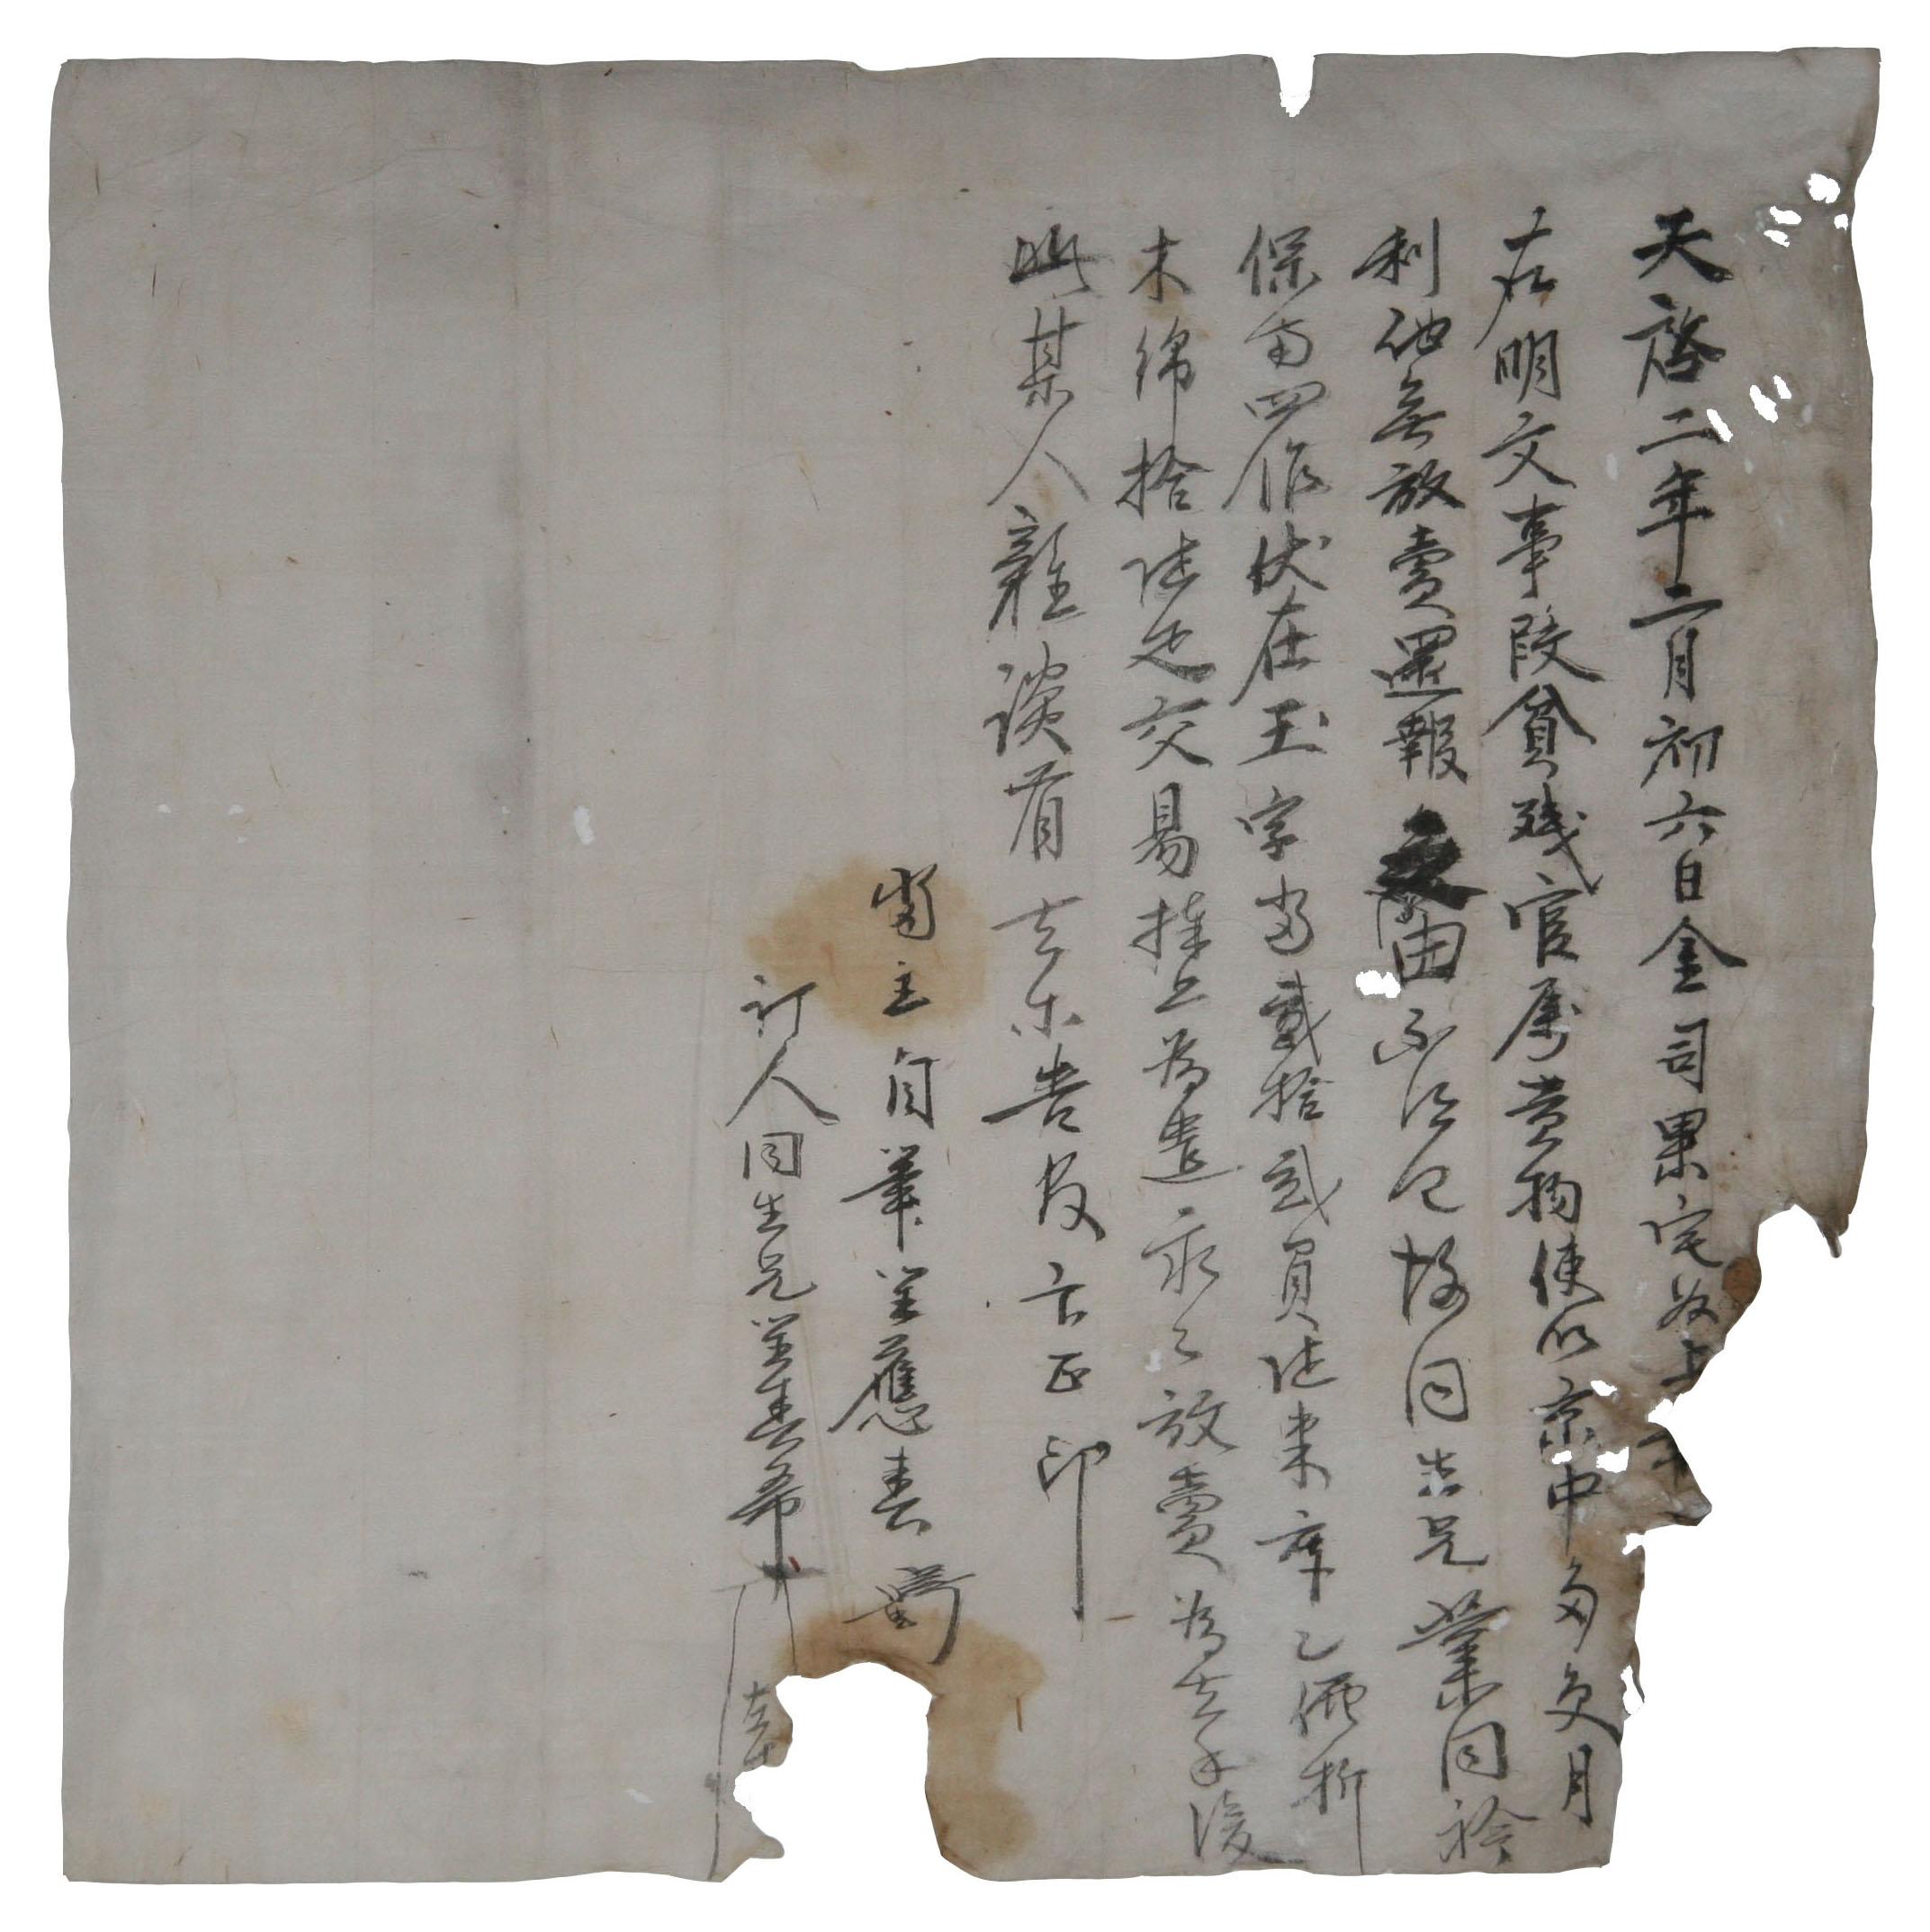 1622년 최응춘이 김사과댁에 논을 팔면서 작성한 전답매매문기